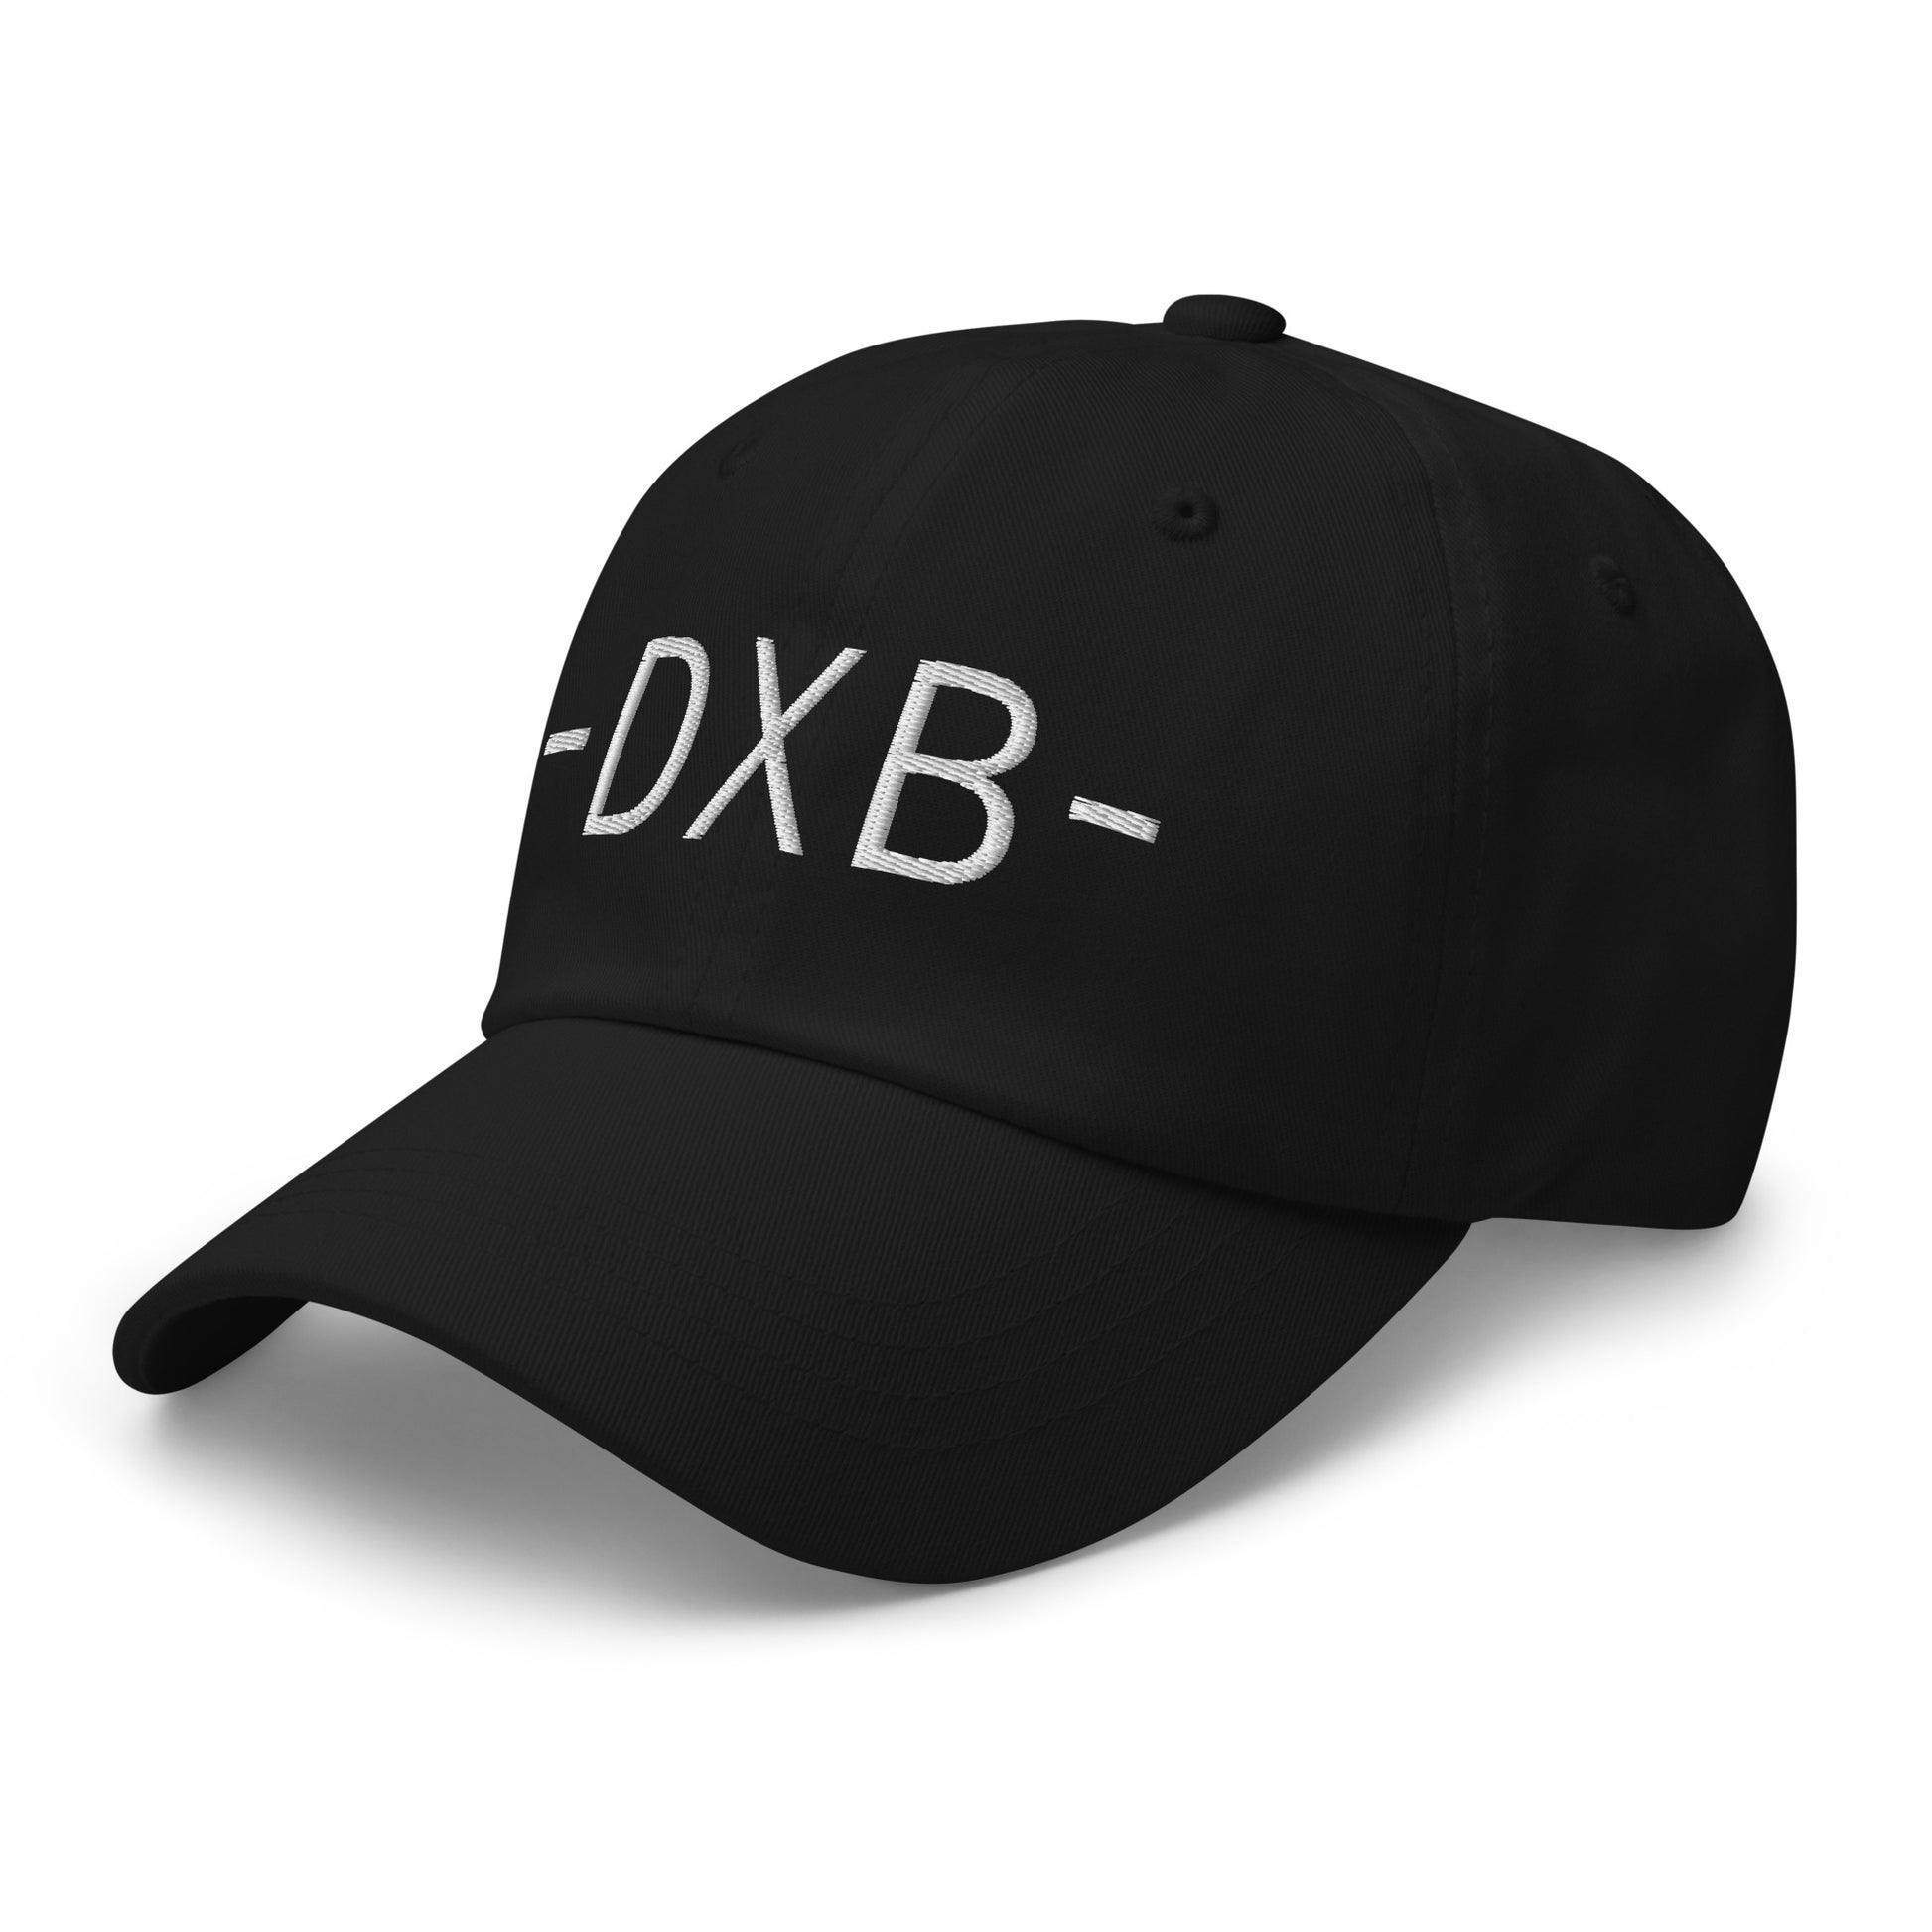 Souvenir Baseball Cap - White • DXB Dubai • YHM Designs - Image 13